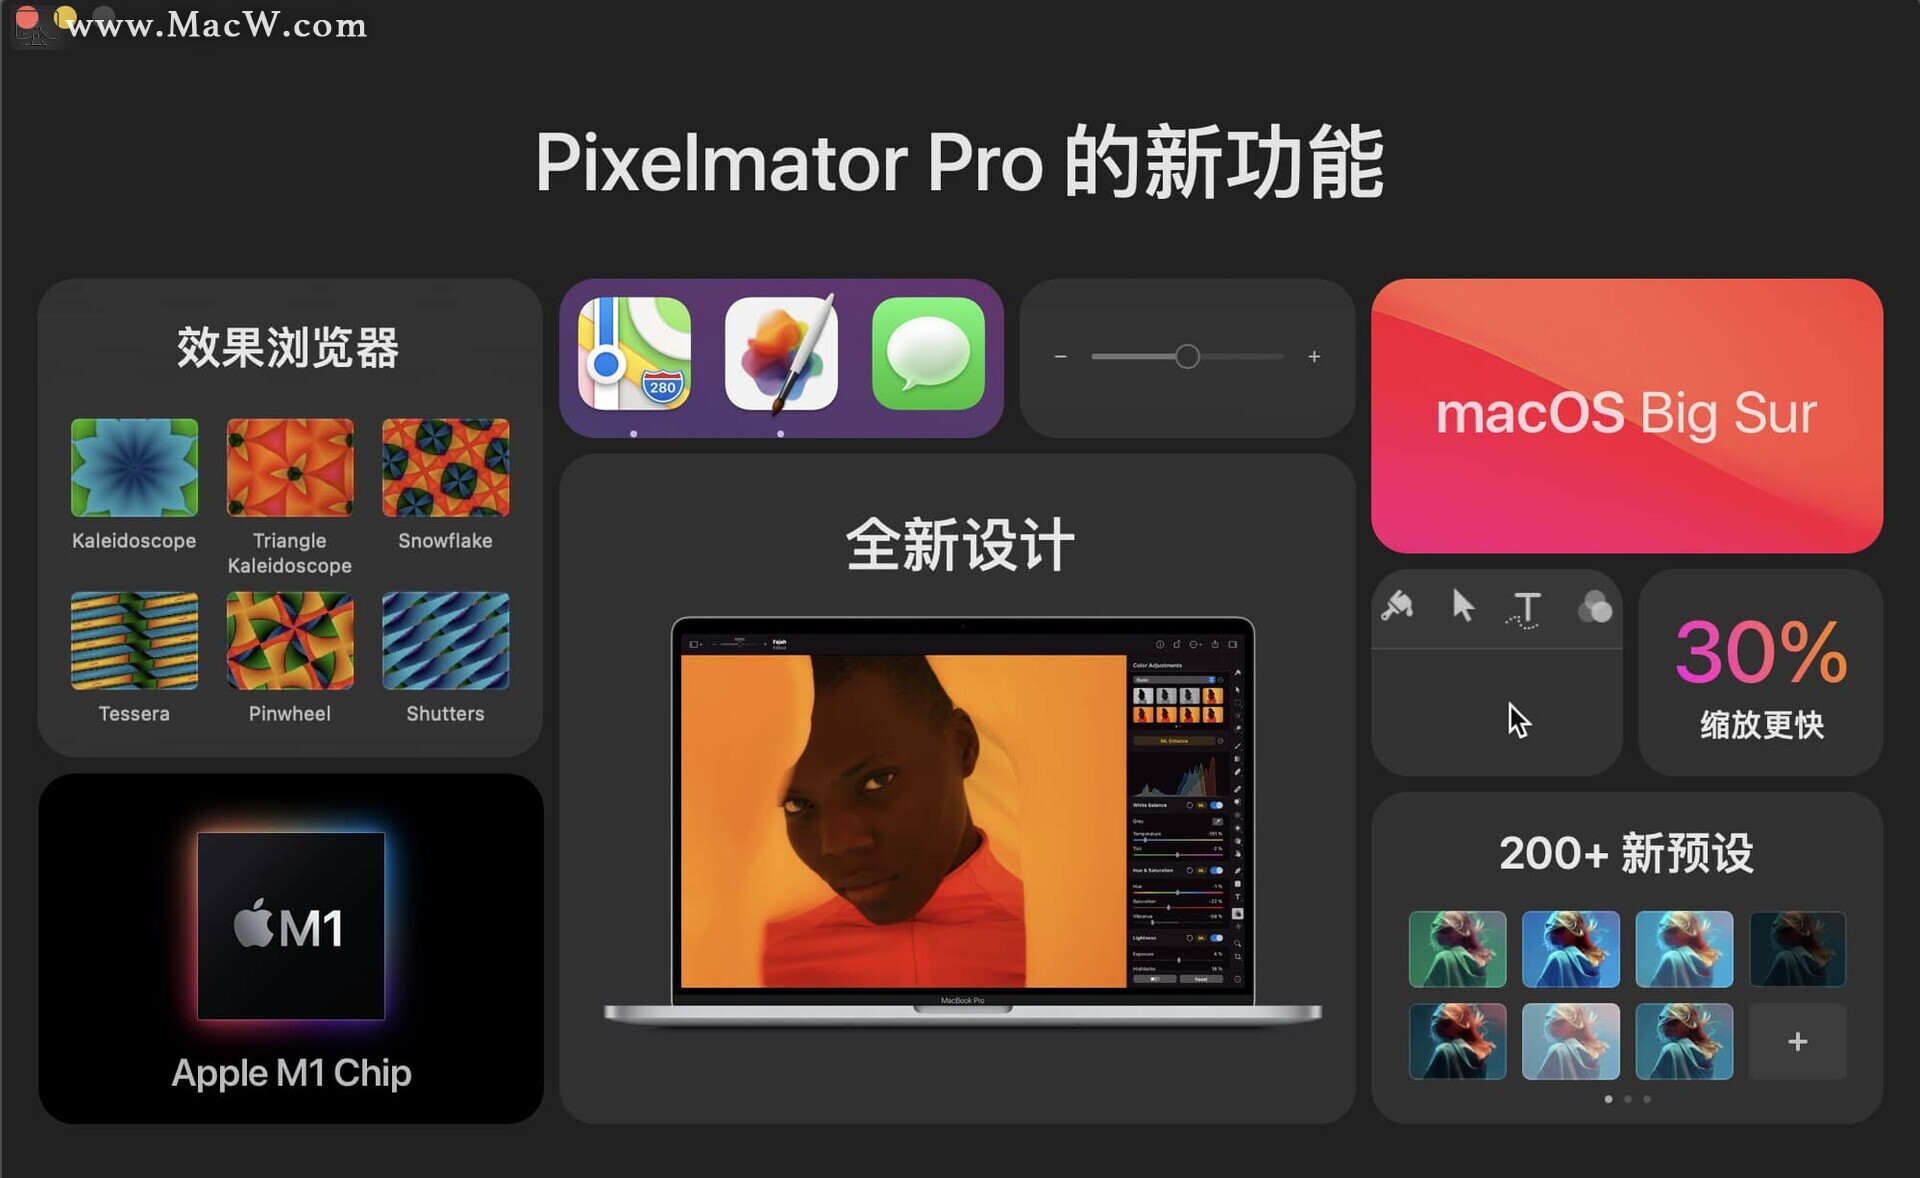 Pixelmator Pro 2.0带来新设计，支持Apple Silicon